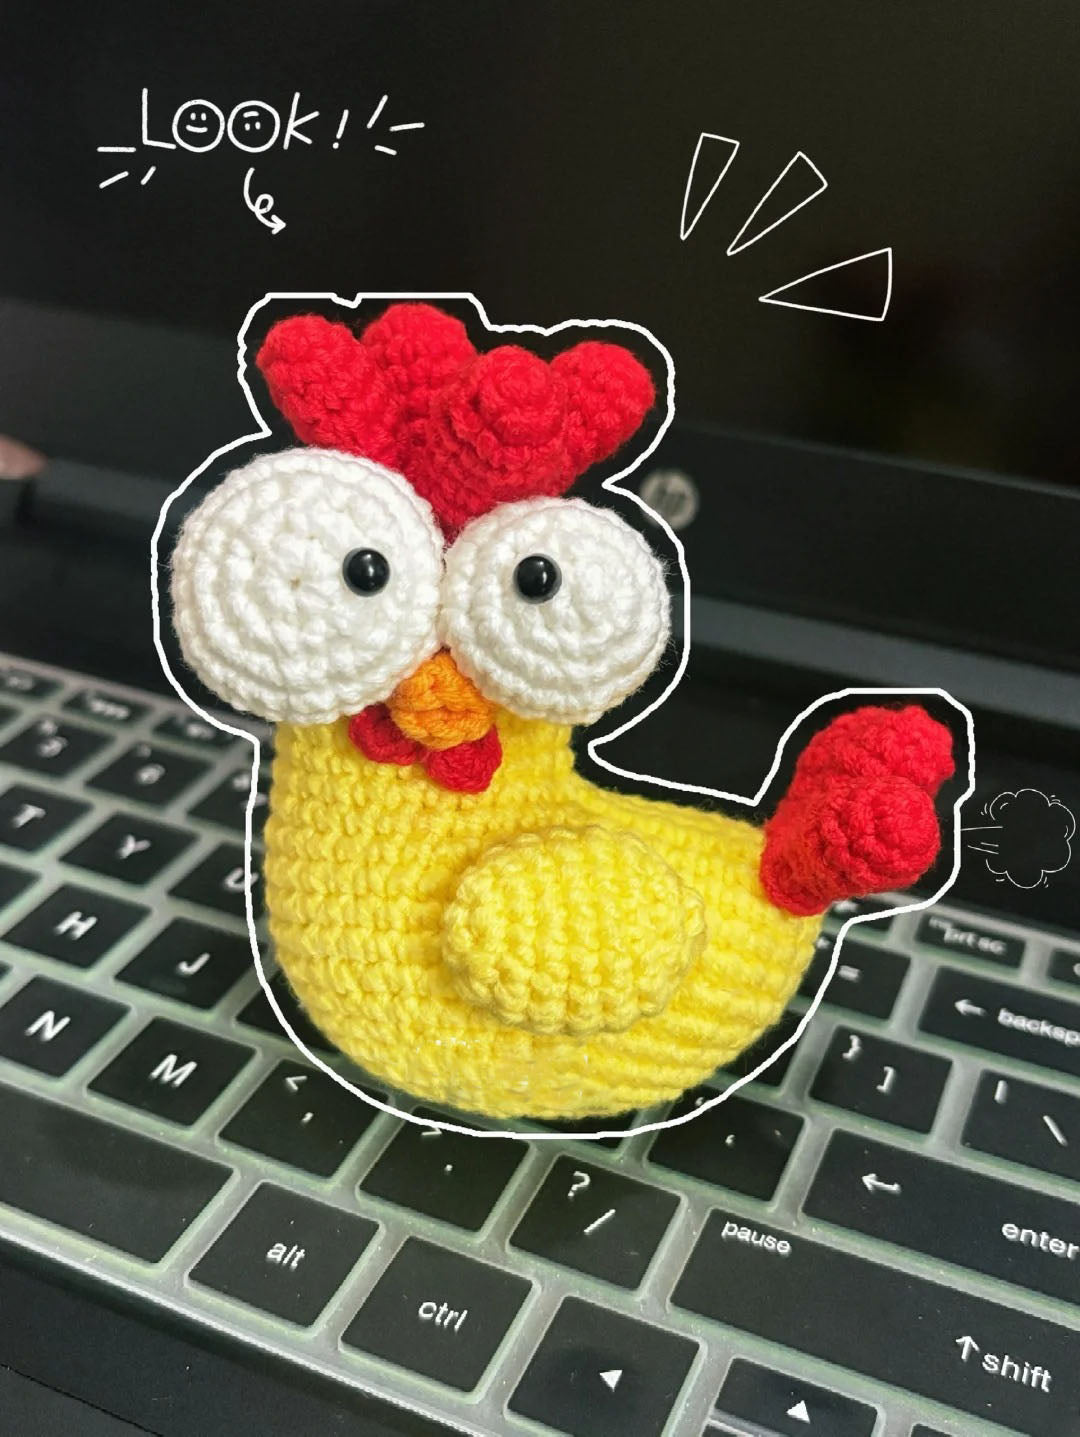 Big Eye Chick Crochet Pattern